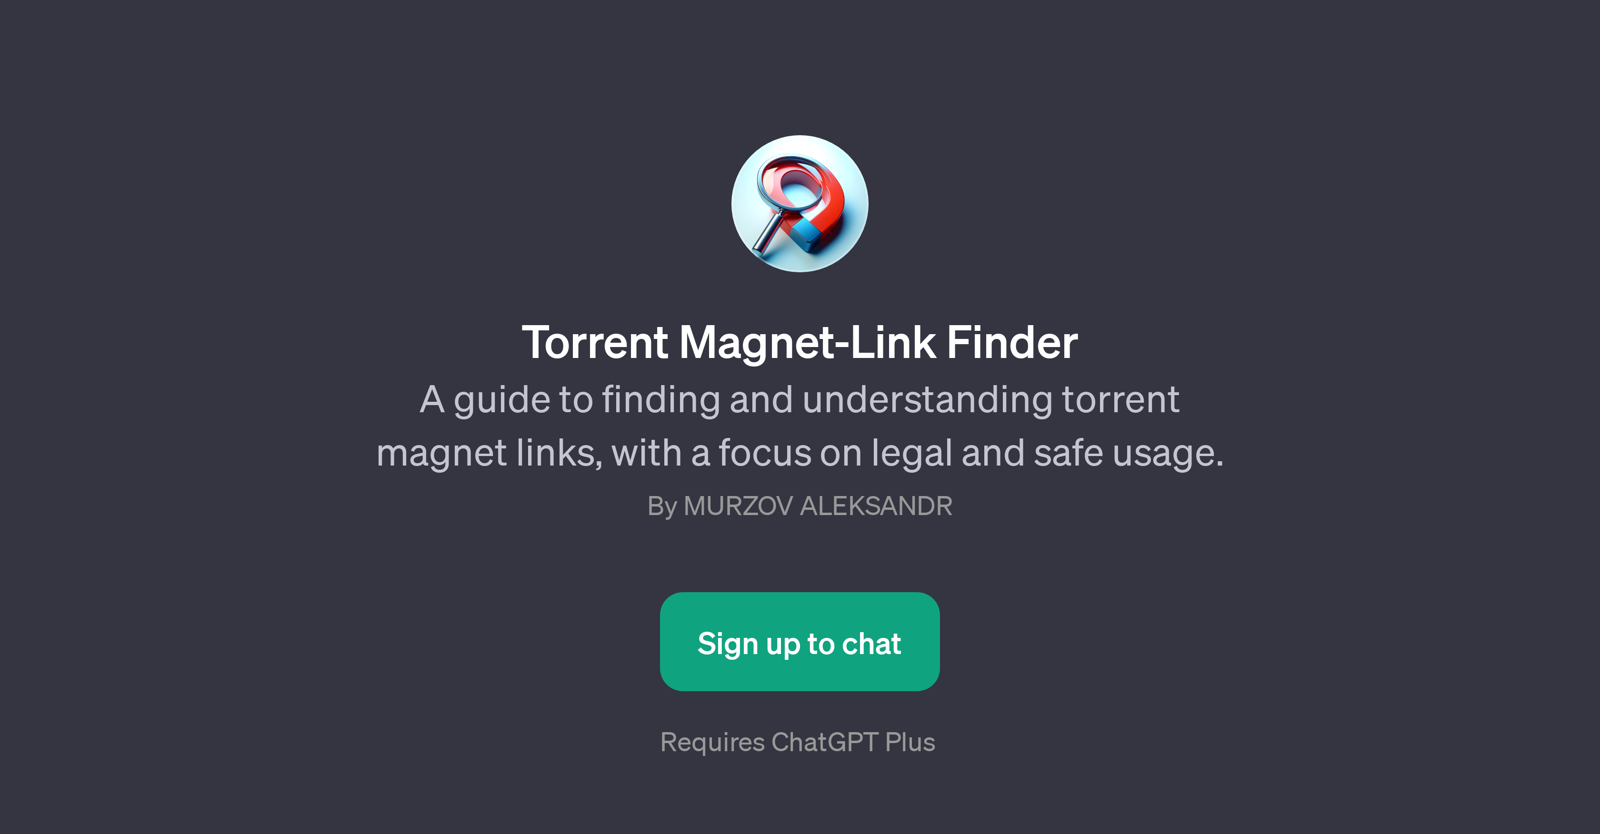 Torrent Magnet-Link Finder website